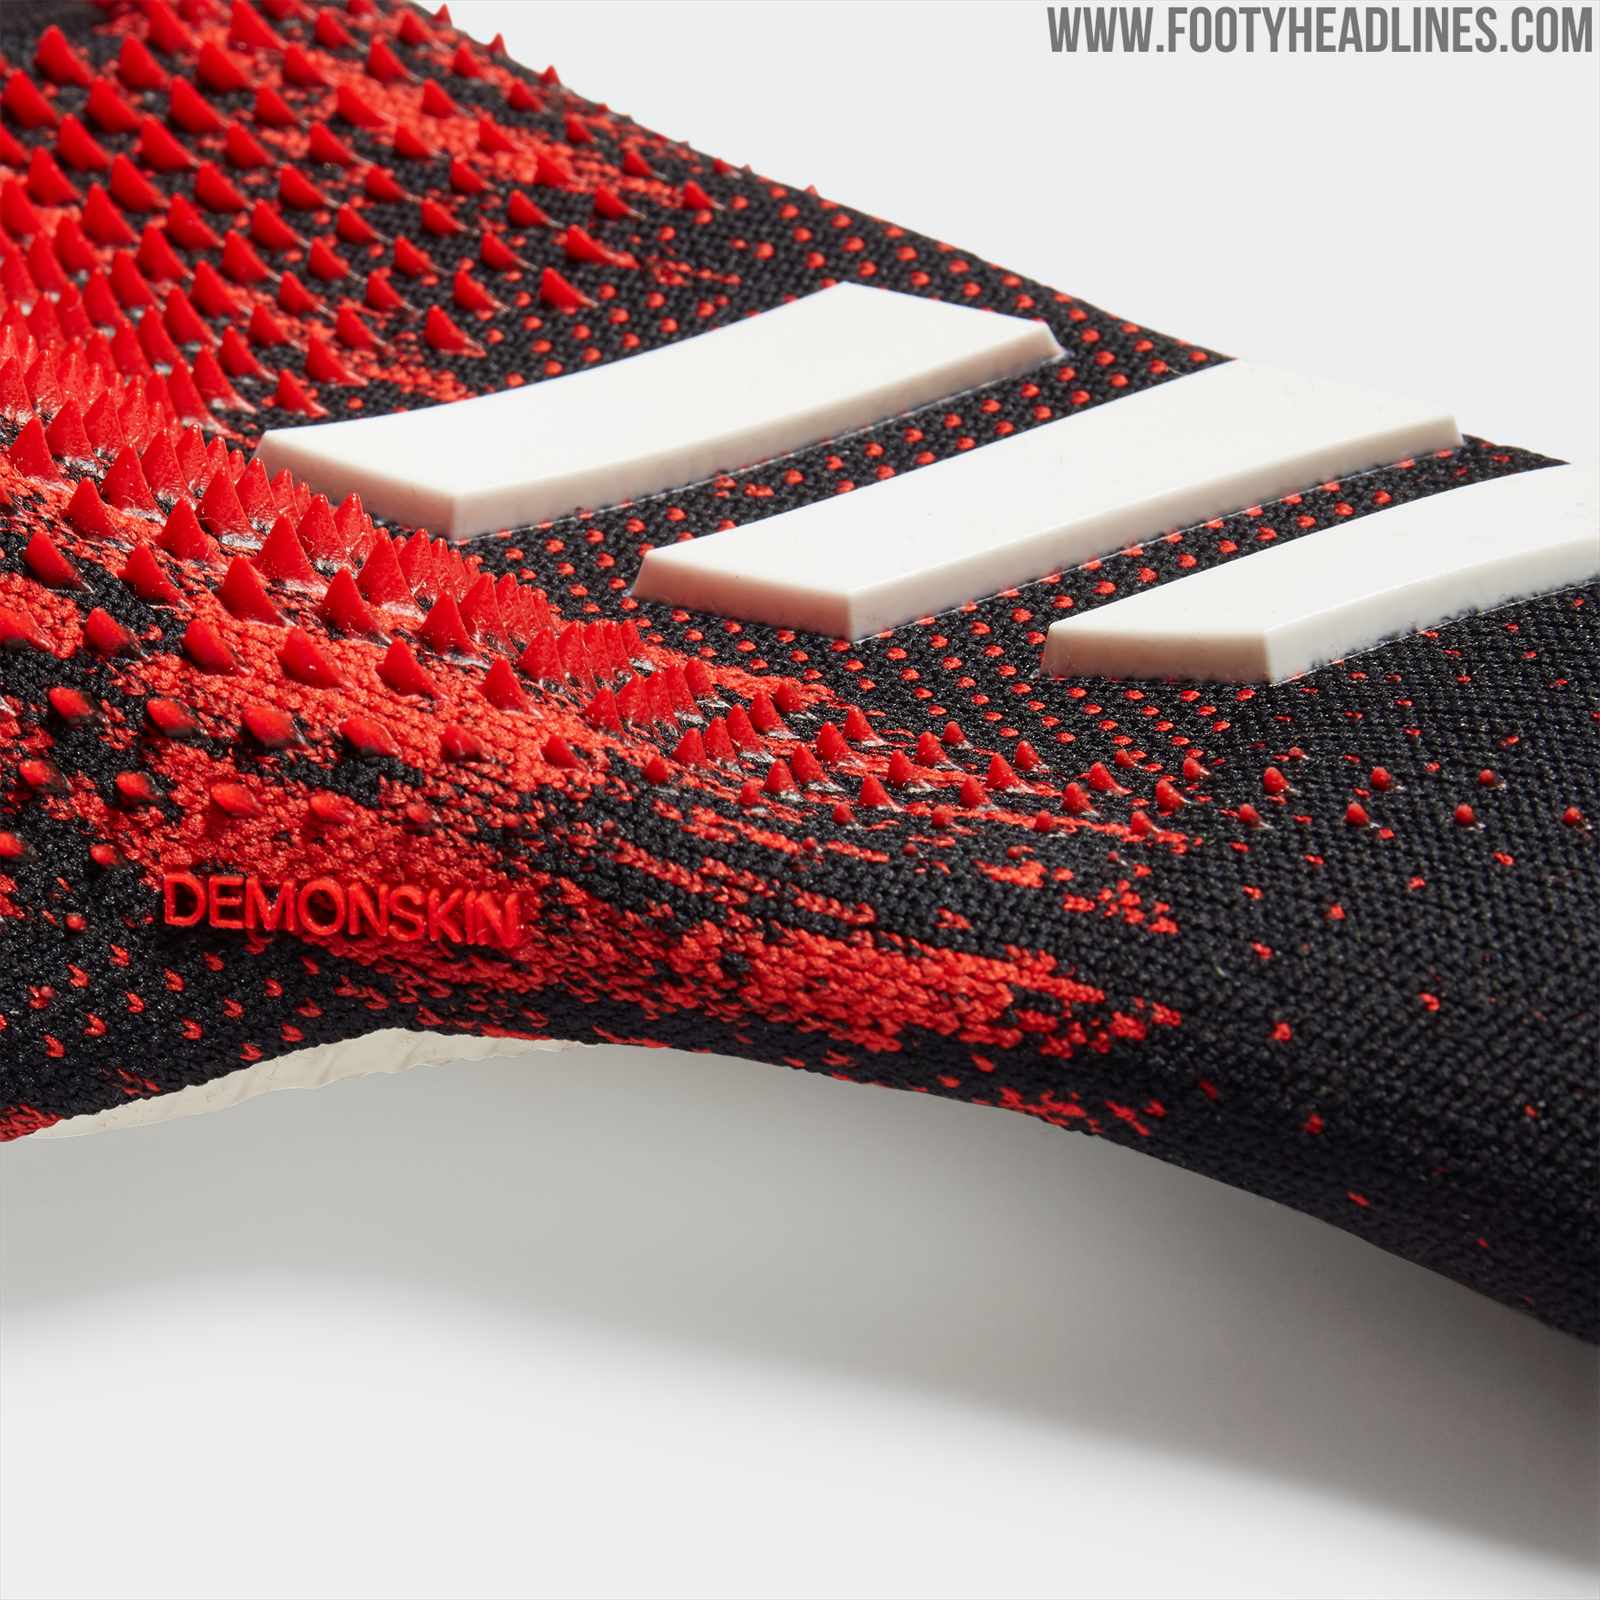 Adidas Predator20 PRO GK Glove – Kicks and Sticks